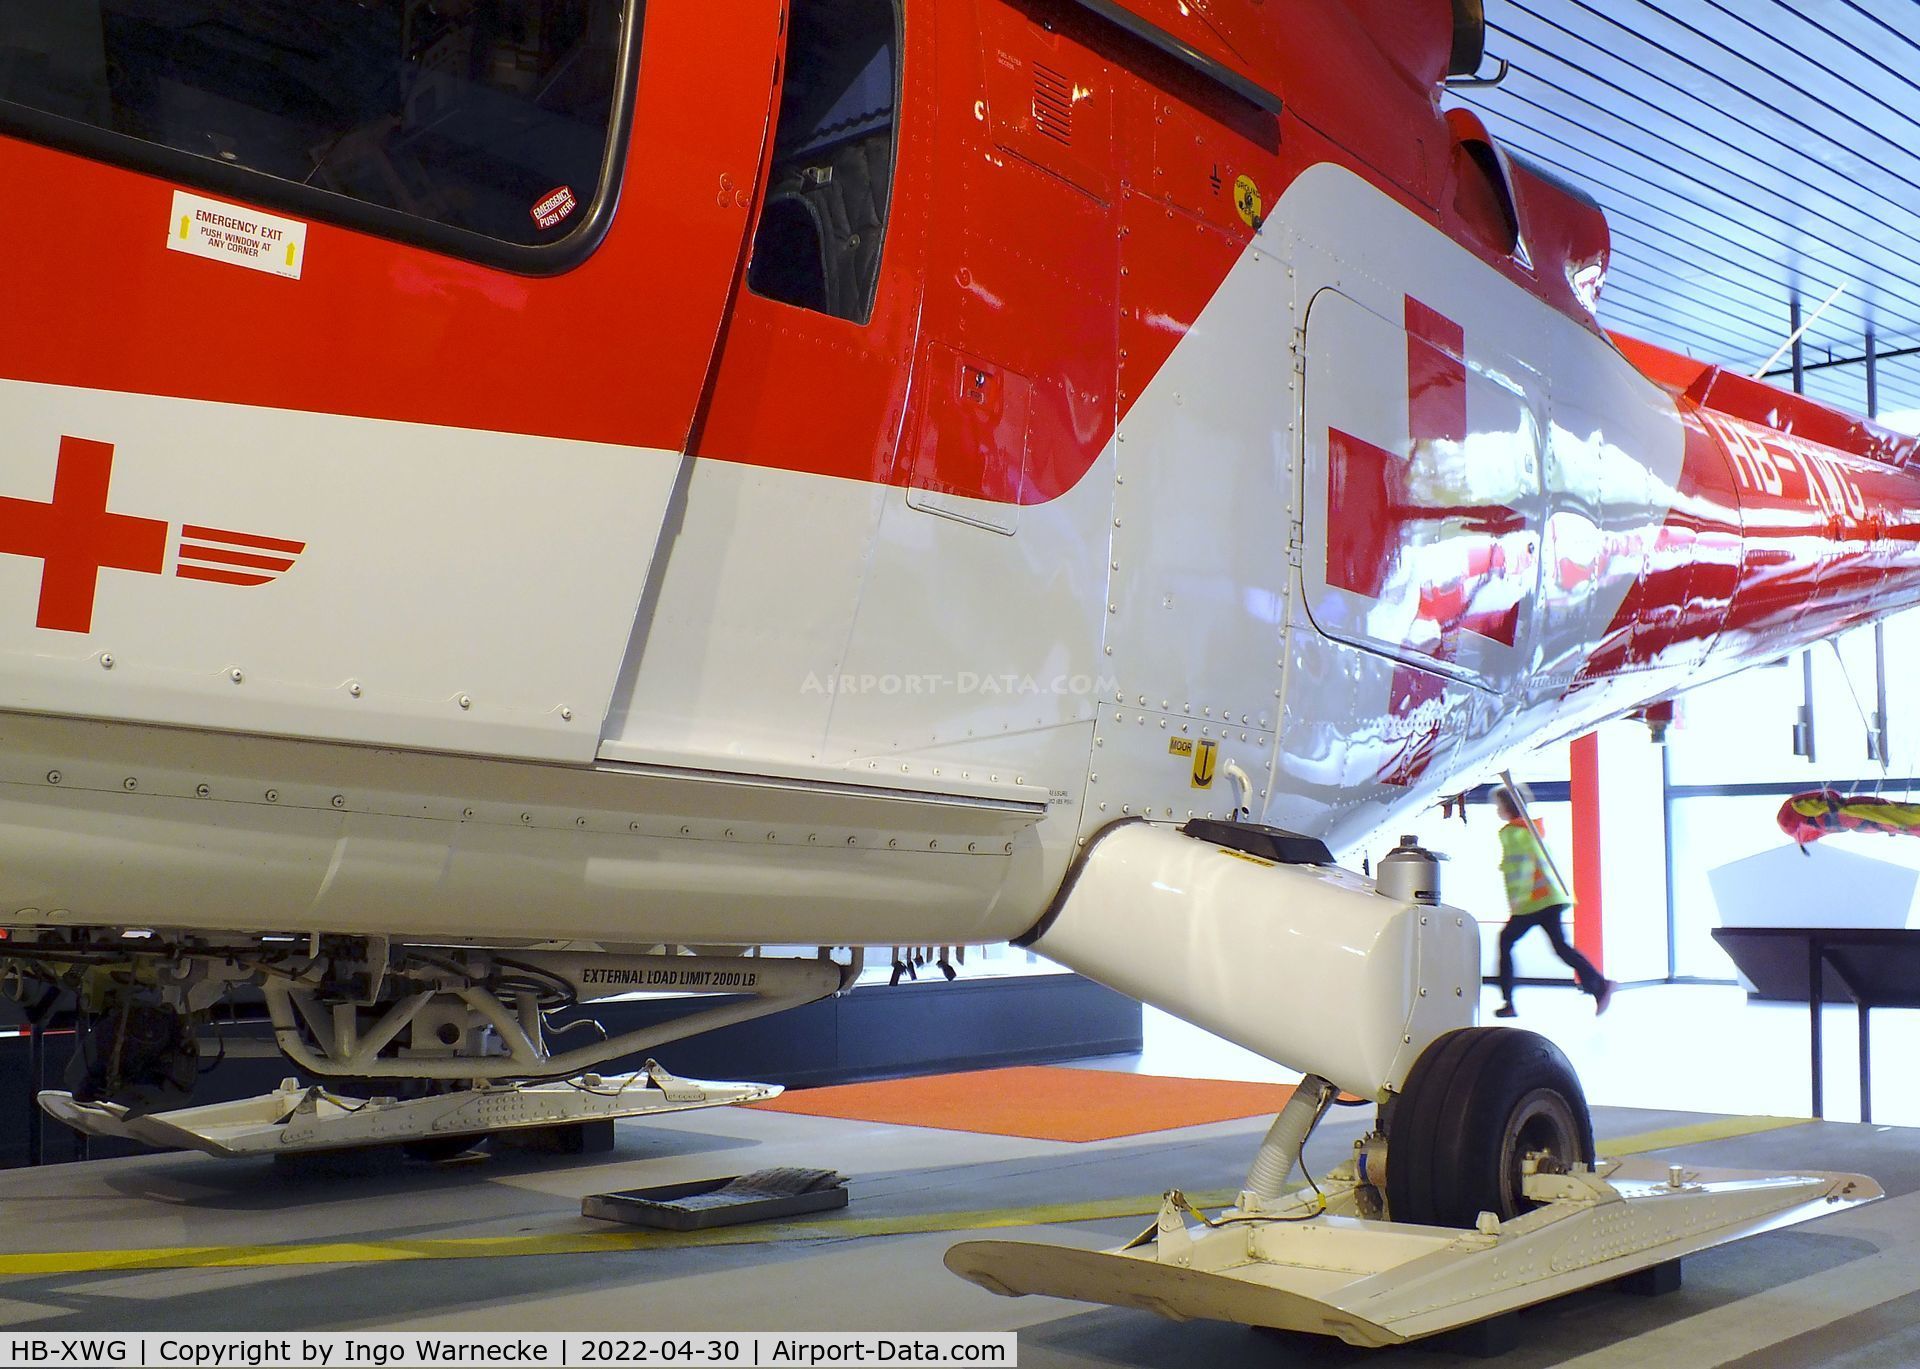 HB-XWG, 1993 Agusta A-109K-2 C/N 10007, Agusta A.109K-2 at the Verkehrshaus der Schweiz, Luzern (Lucerne)